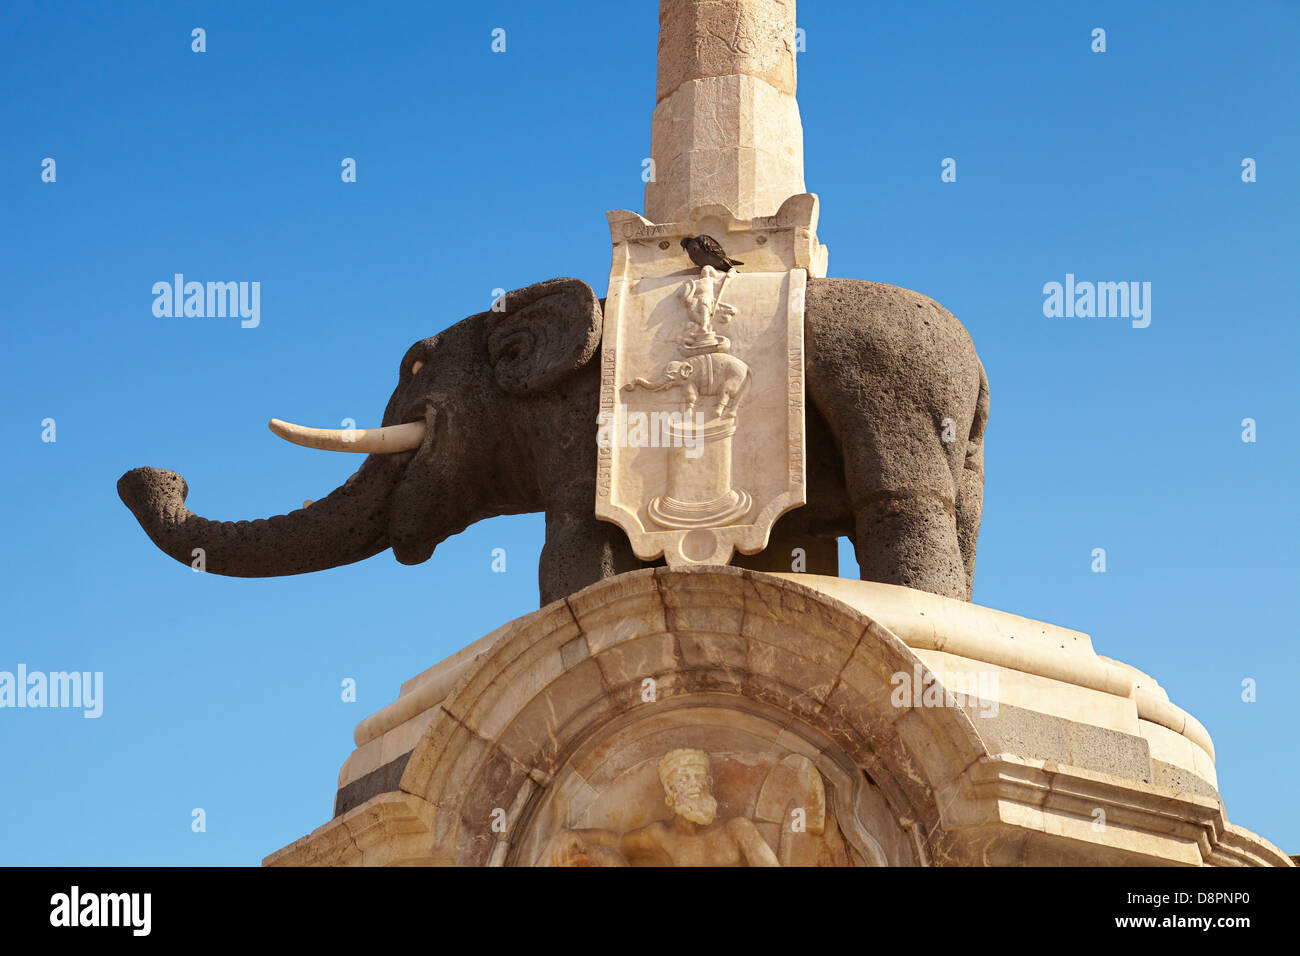 Dettaglio del la fontana dell'Elefante (lava elefante e obelisco egiziano), Piazza Duomo di Catania, Sicilia, Italia Foto Stock